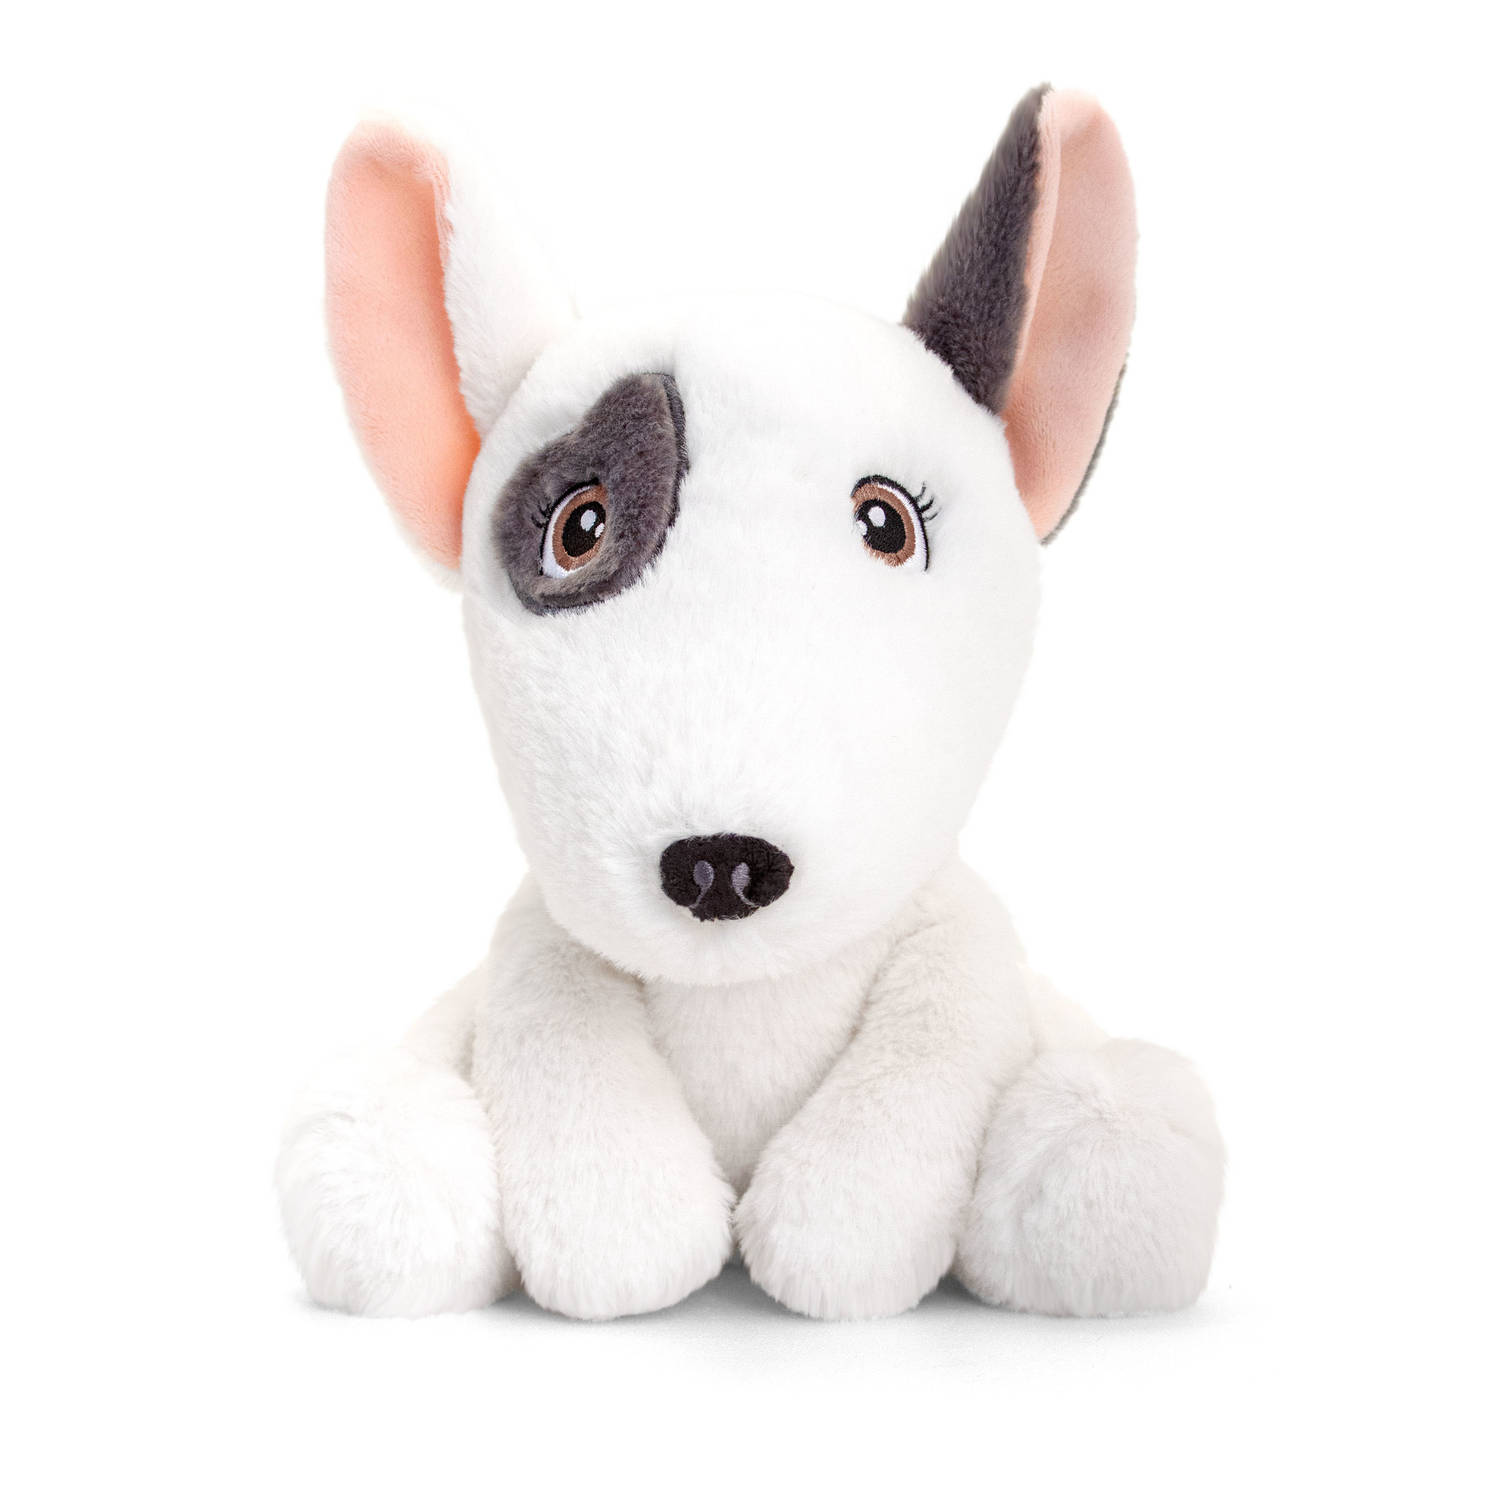 Pluche knuffel dieren pitbull terrier hond 25 cm - Knuffelbeesten speelgoed